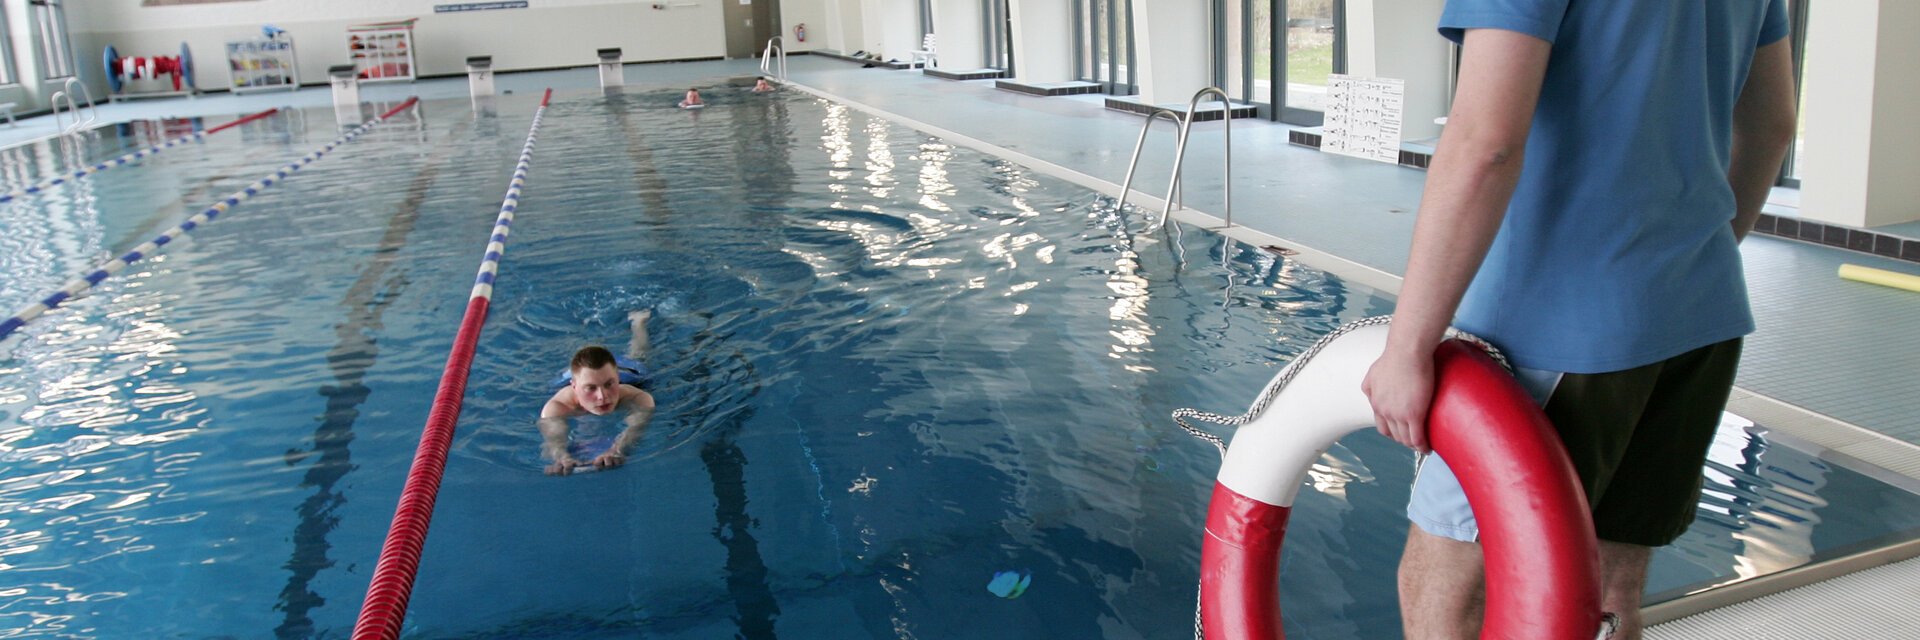 Ein Mann steht mit Rettungsring in der Hand am Schwimmbecken